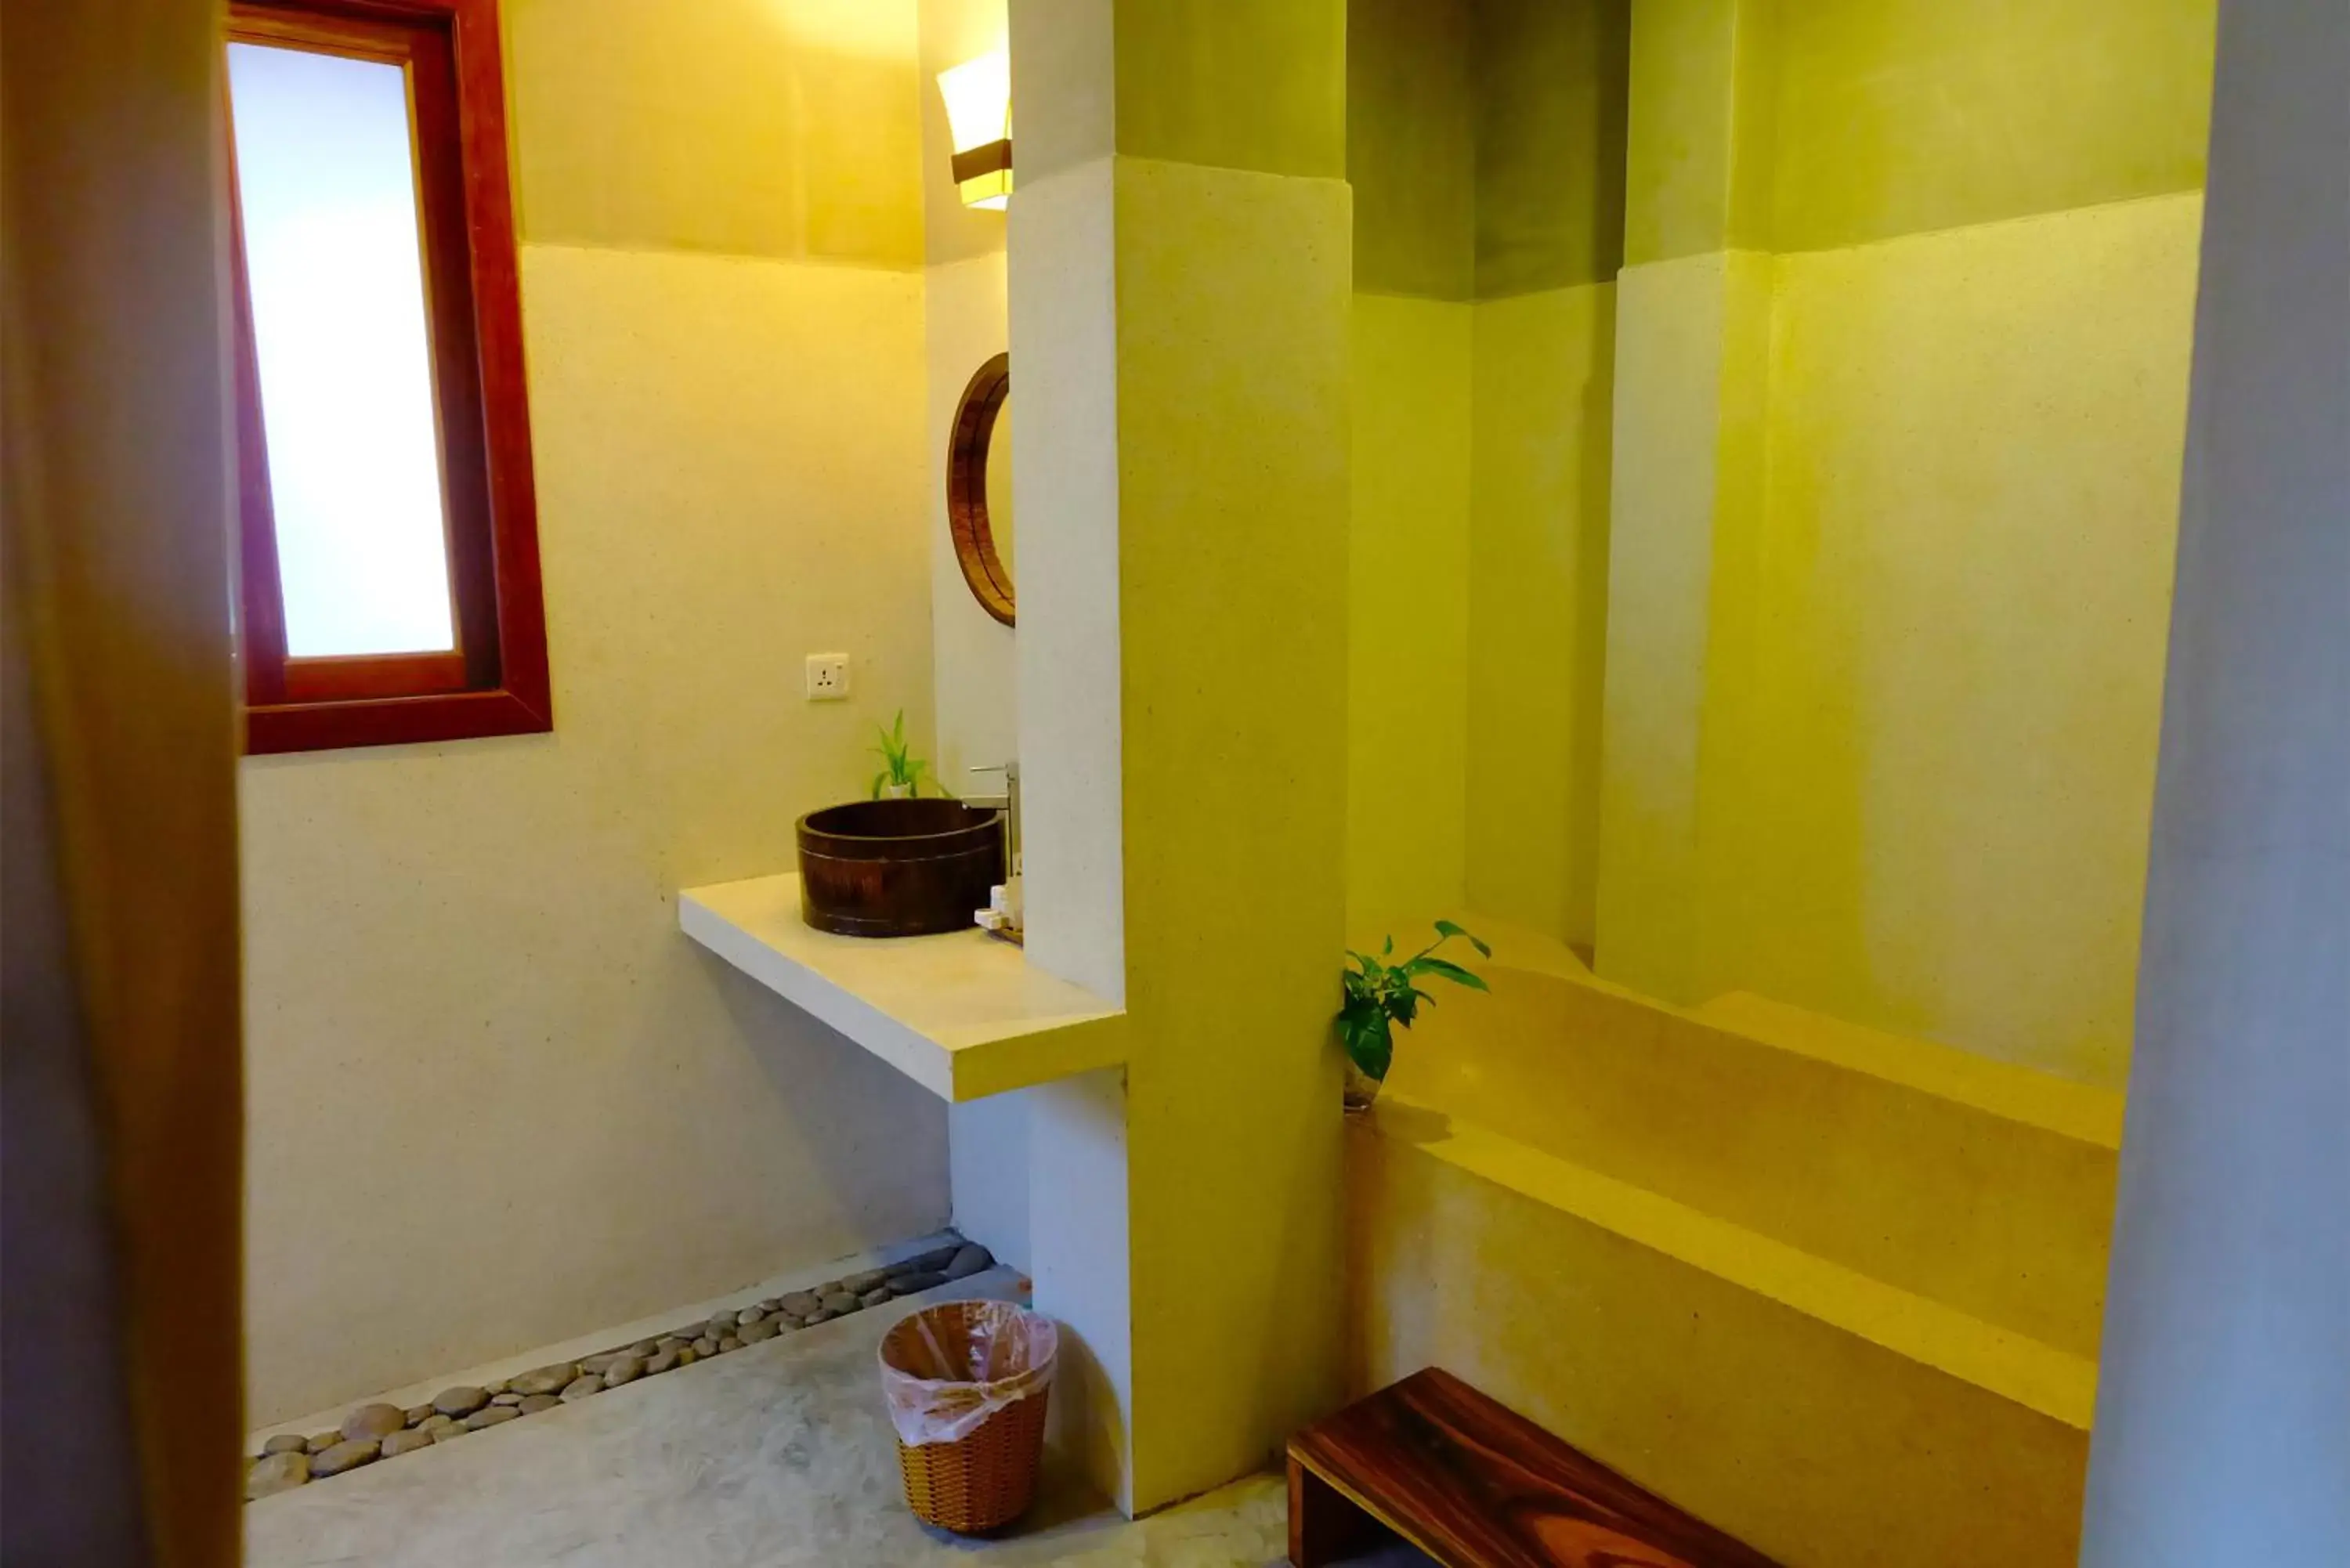 Bathroom, Coffee/Tea Facilities in Saravoan Royal Palace